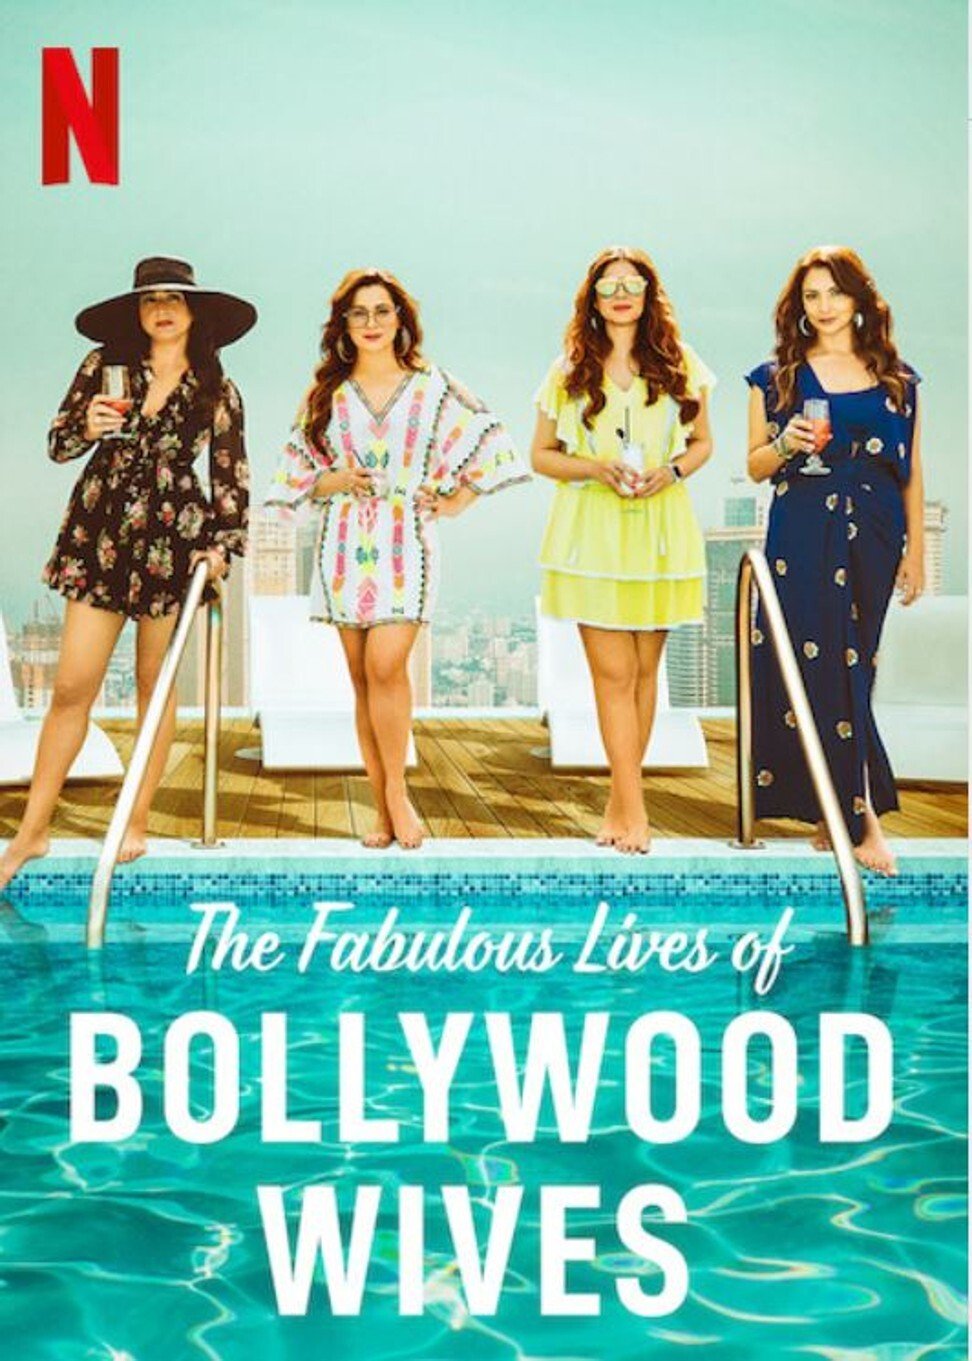 ดูหนังออนไลน์ฟรี Fabulous Lives of Bollywood Wives Season 1 Ep05 แฟบูลูส ไลฟ์ ออฟ บอลลีวู๊ด ไวส์ท ปี1 ตอนที่5